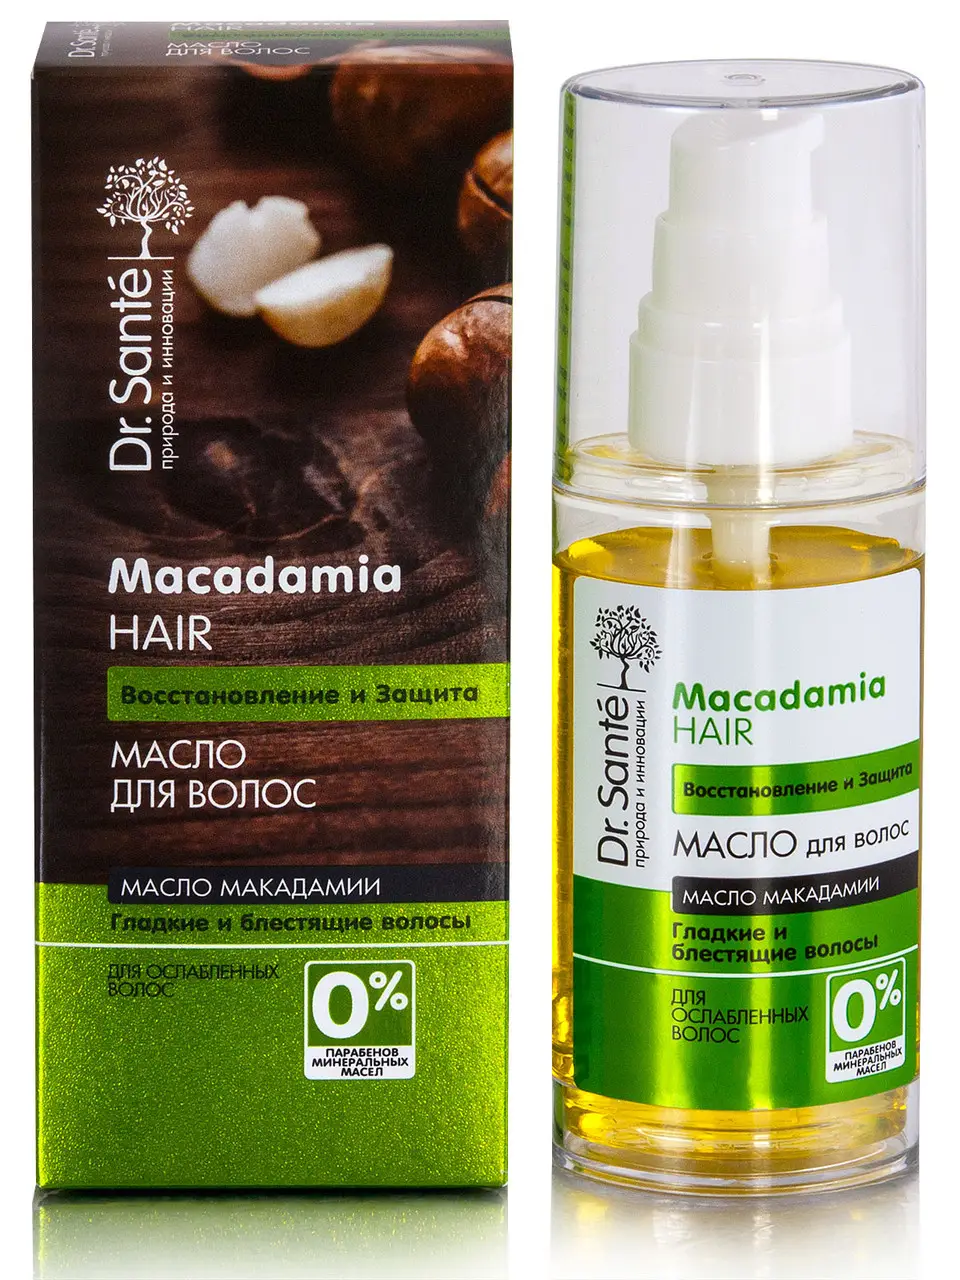 dr sante macadamia olejek do włosów olej makadamia i keratyna